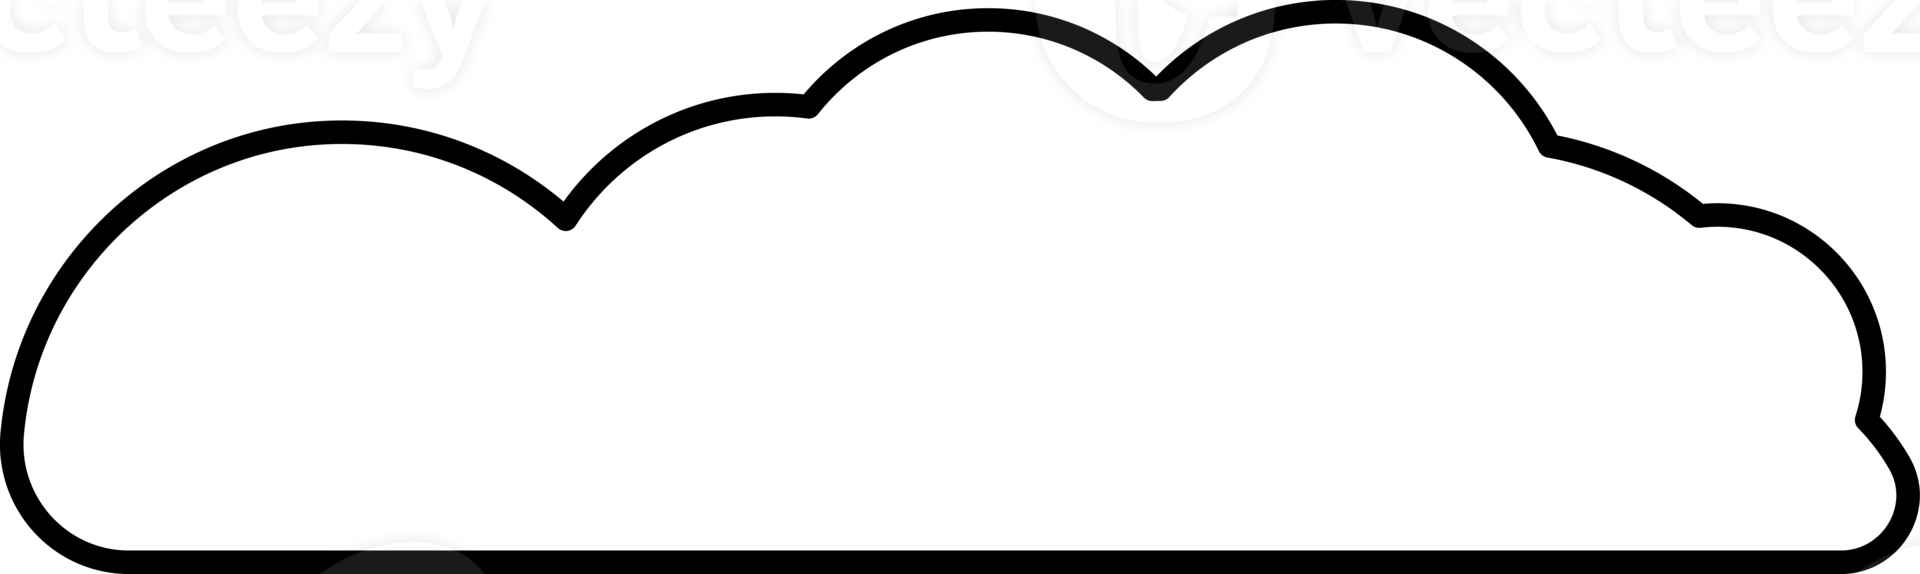 wolk element in PNG type. vlak illustratie stijl. minimaal voorwerp.